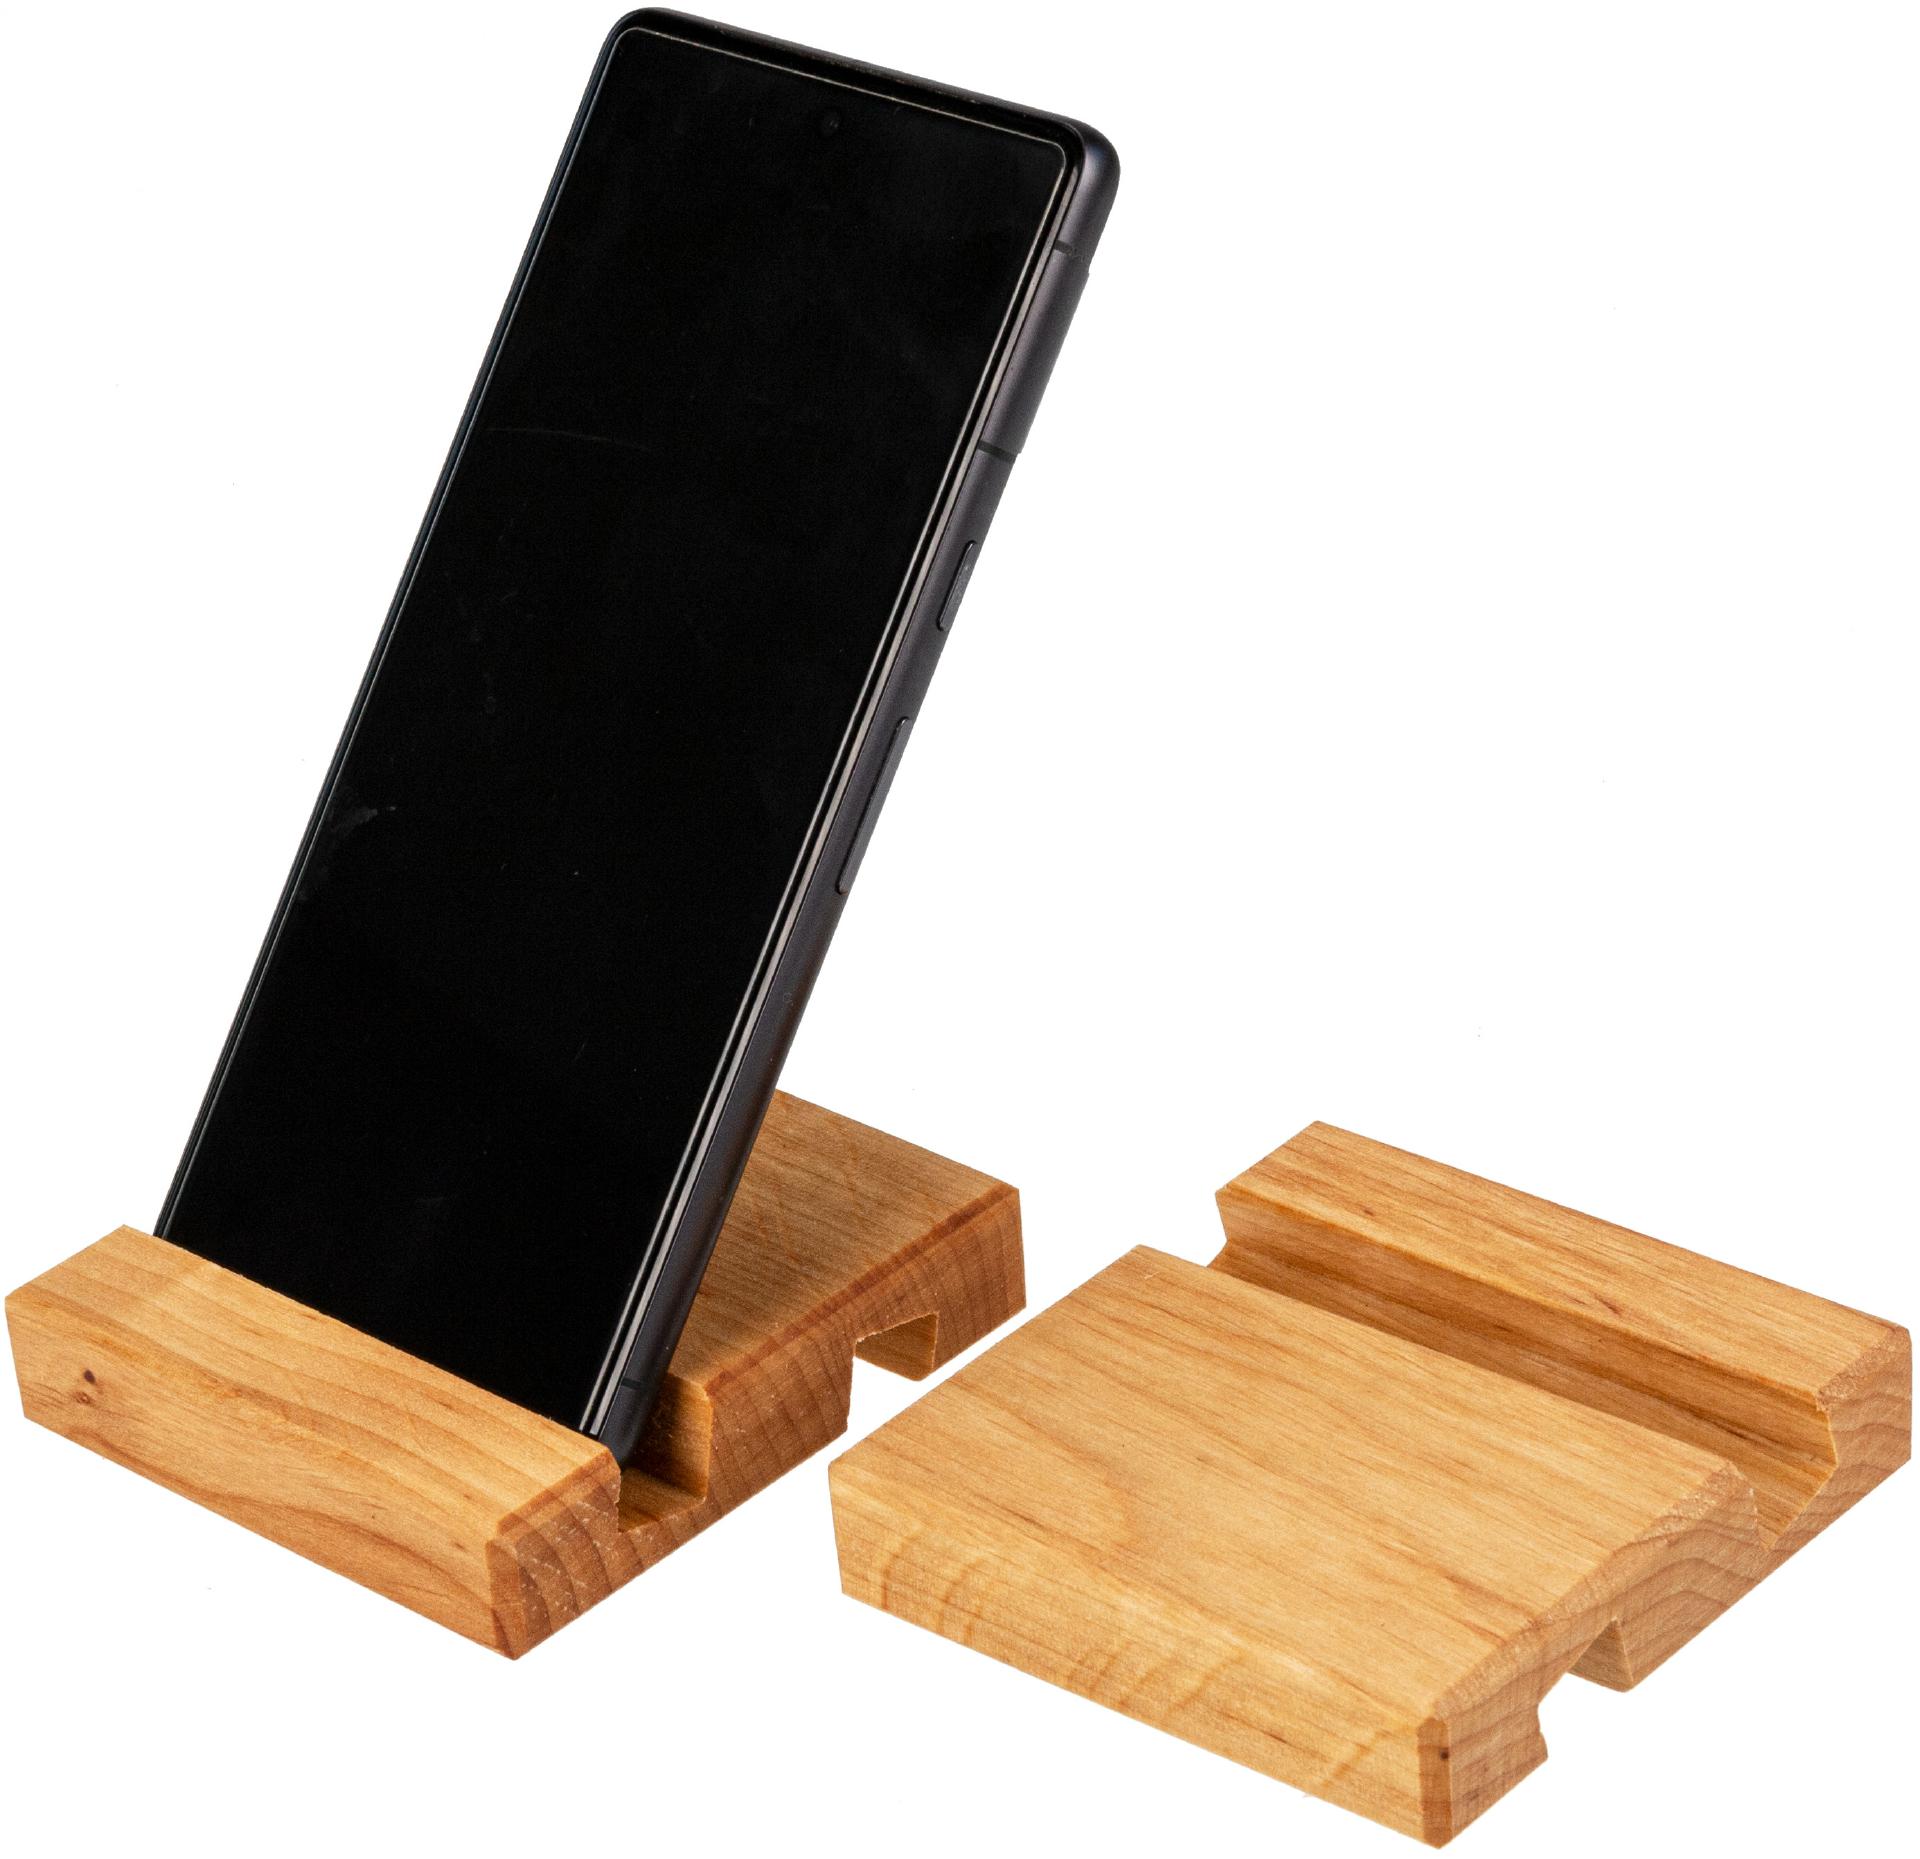 Massivholz Smartphone und Tablet Halter aus geoeltem Erlenholz